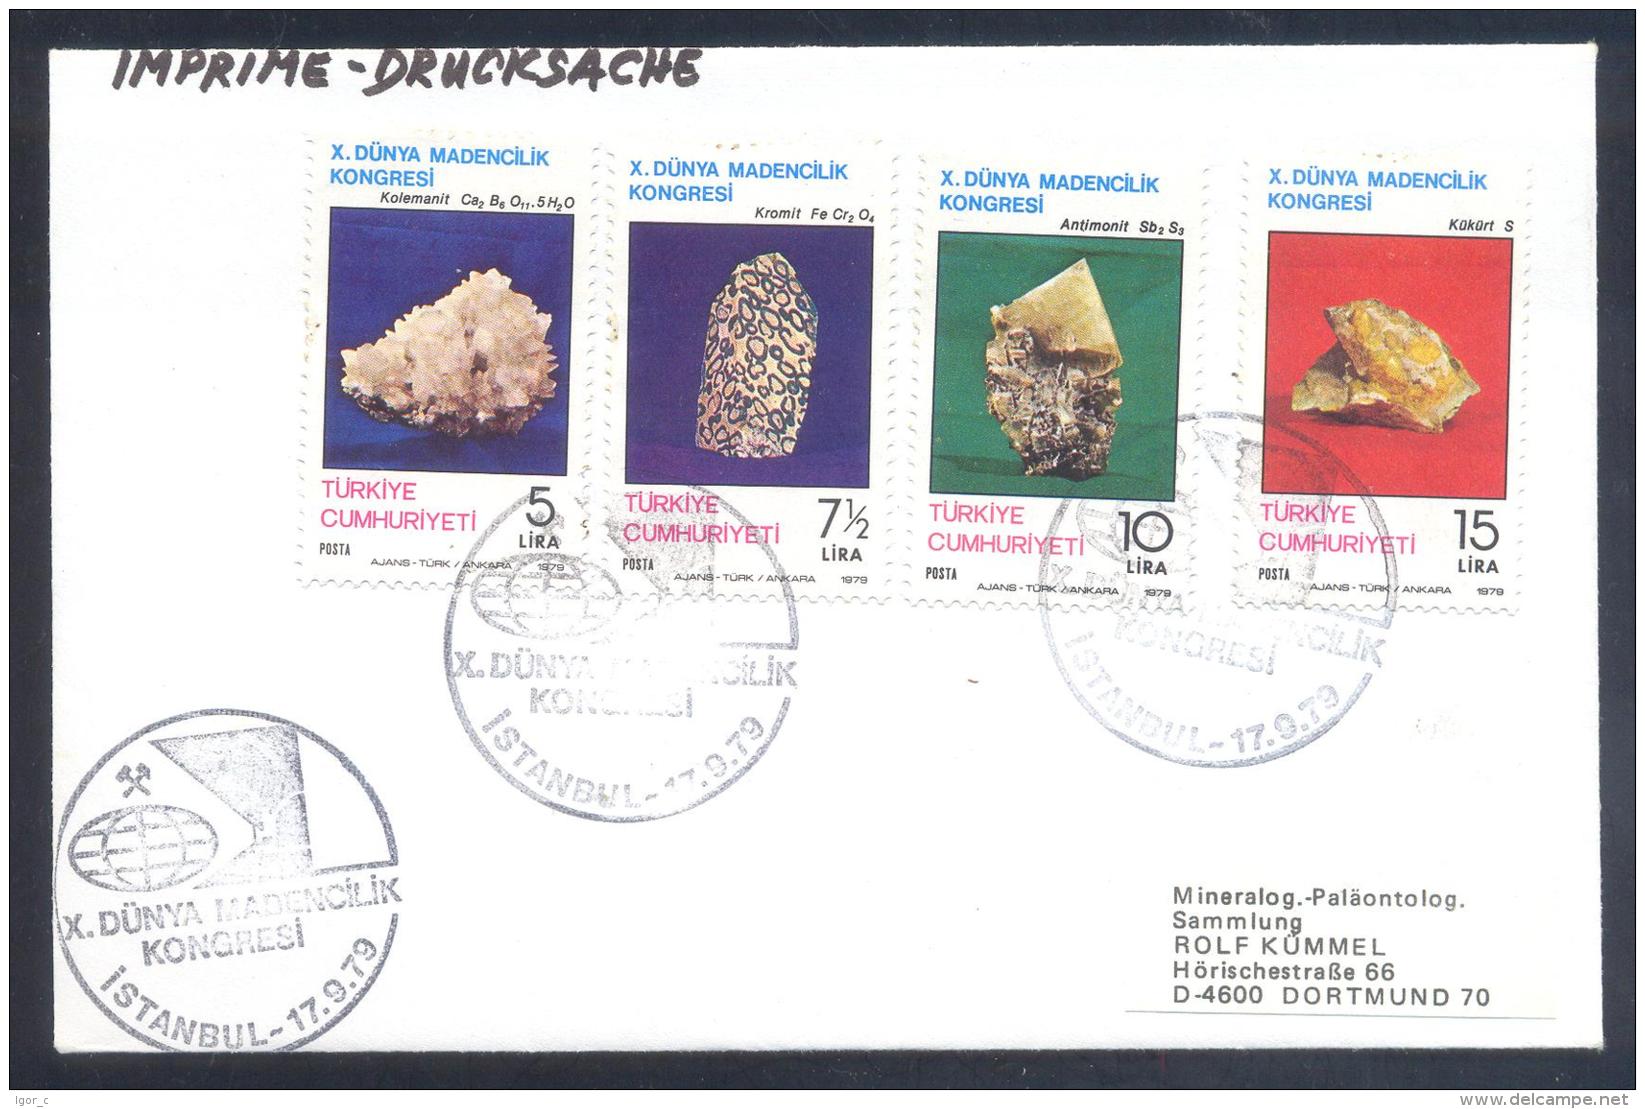 Turkey 1979 Cover - Minerals Fosil Fossil Mine Mineralien Paleontolyogy Speleology; Antimonit Koimit Kolemanit Congress - Mineralien